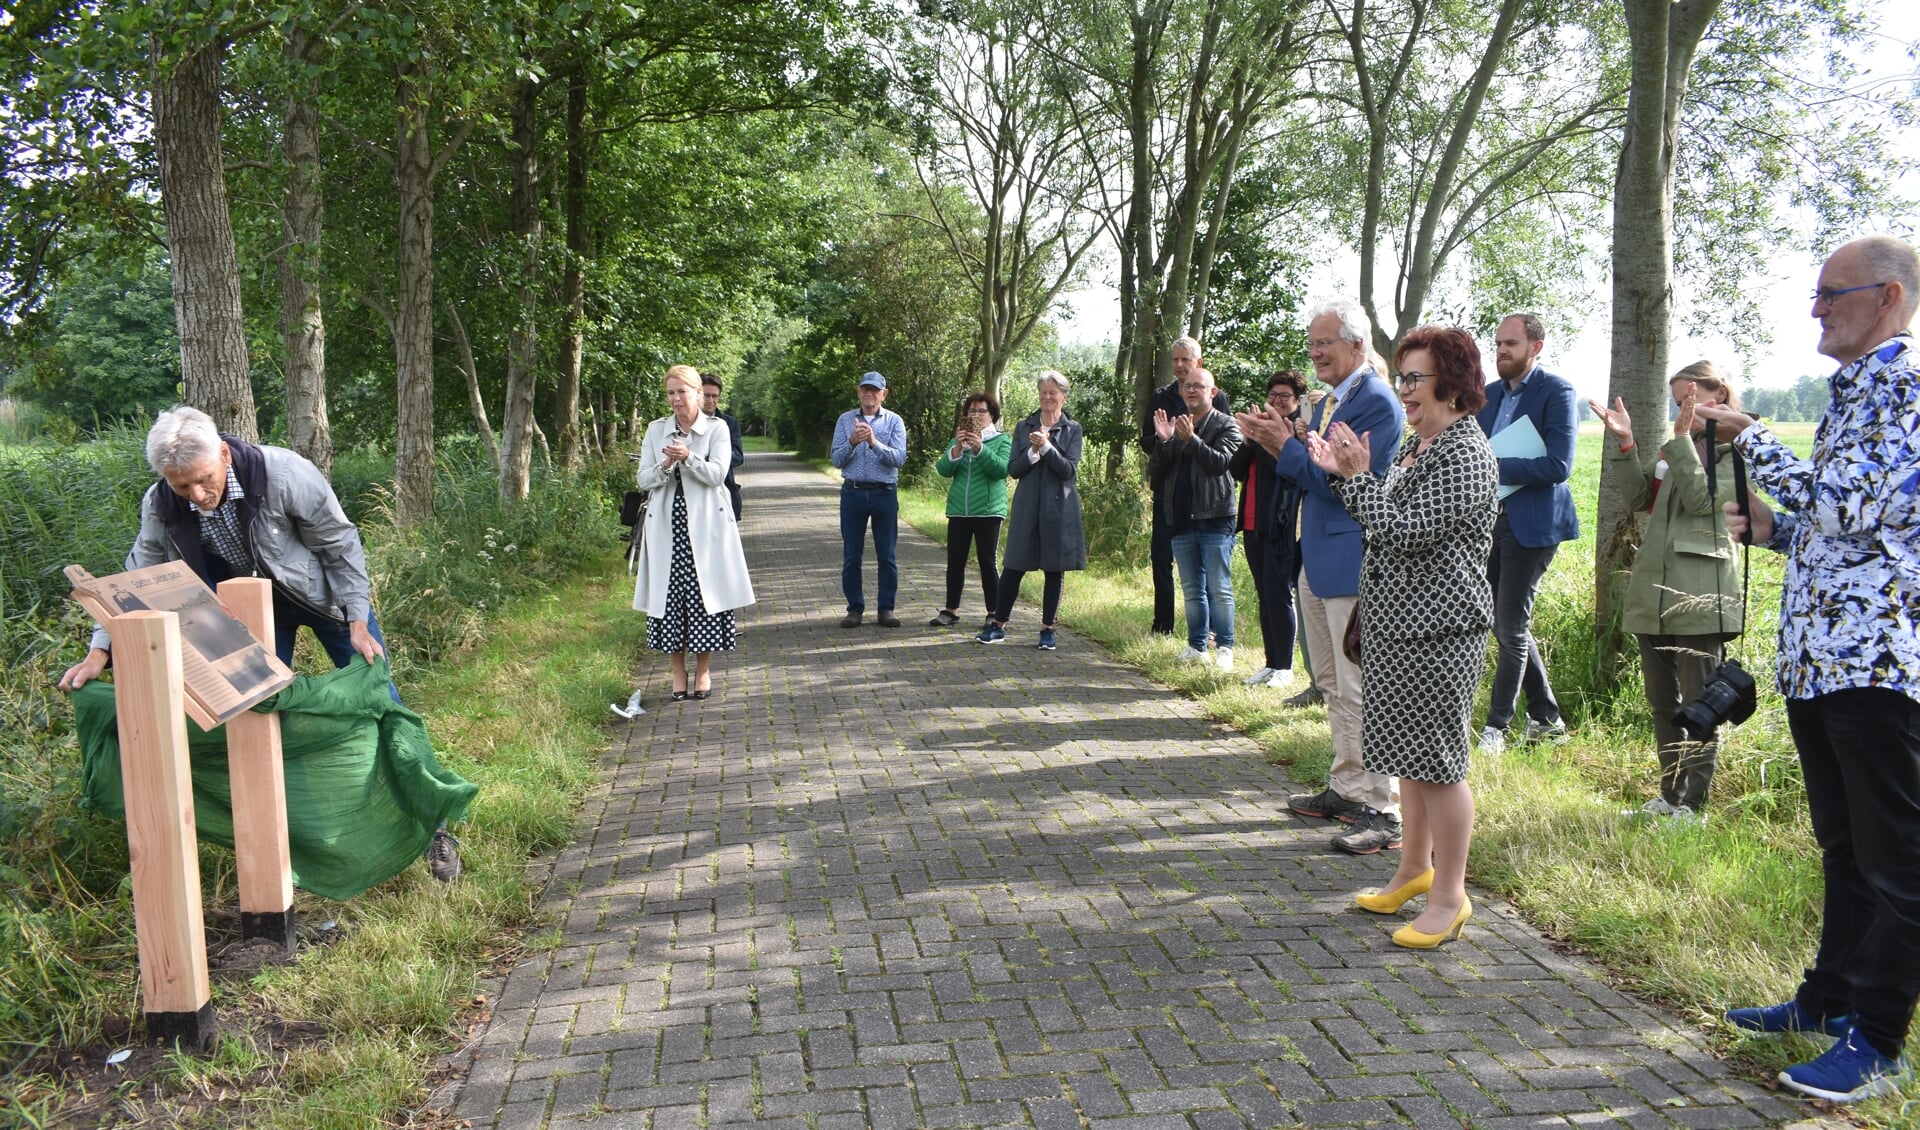 Voorzitter Lútsen Wijma van de lokale werkgroep opent de 'beleefroute'. Onder andere de bestuurders Avine Fokkens (witte jas), Jan Rijpstra (blauw jasje), Annet van der Hoek (WF) en Meindert de Boer (Doarspbelang) applaudiseren.